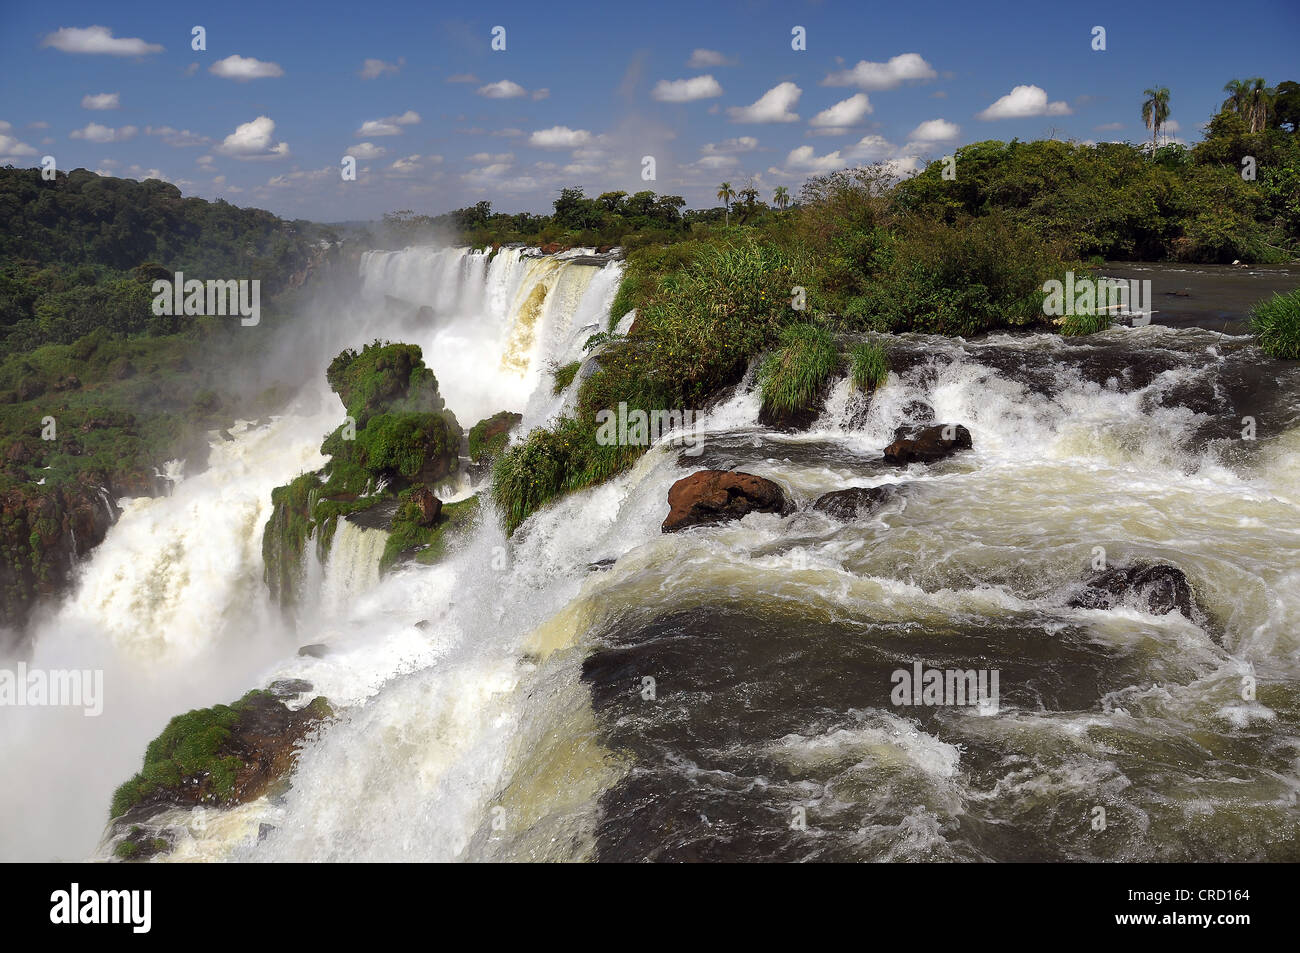 Cataratas del Iguazu, iguazu, puerto iguazu, Argentine - Brésil frontière, l'Amérique du Sud Banque D'Images